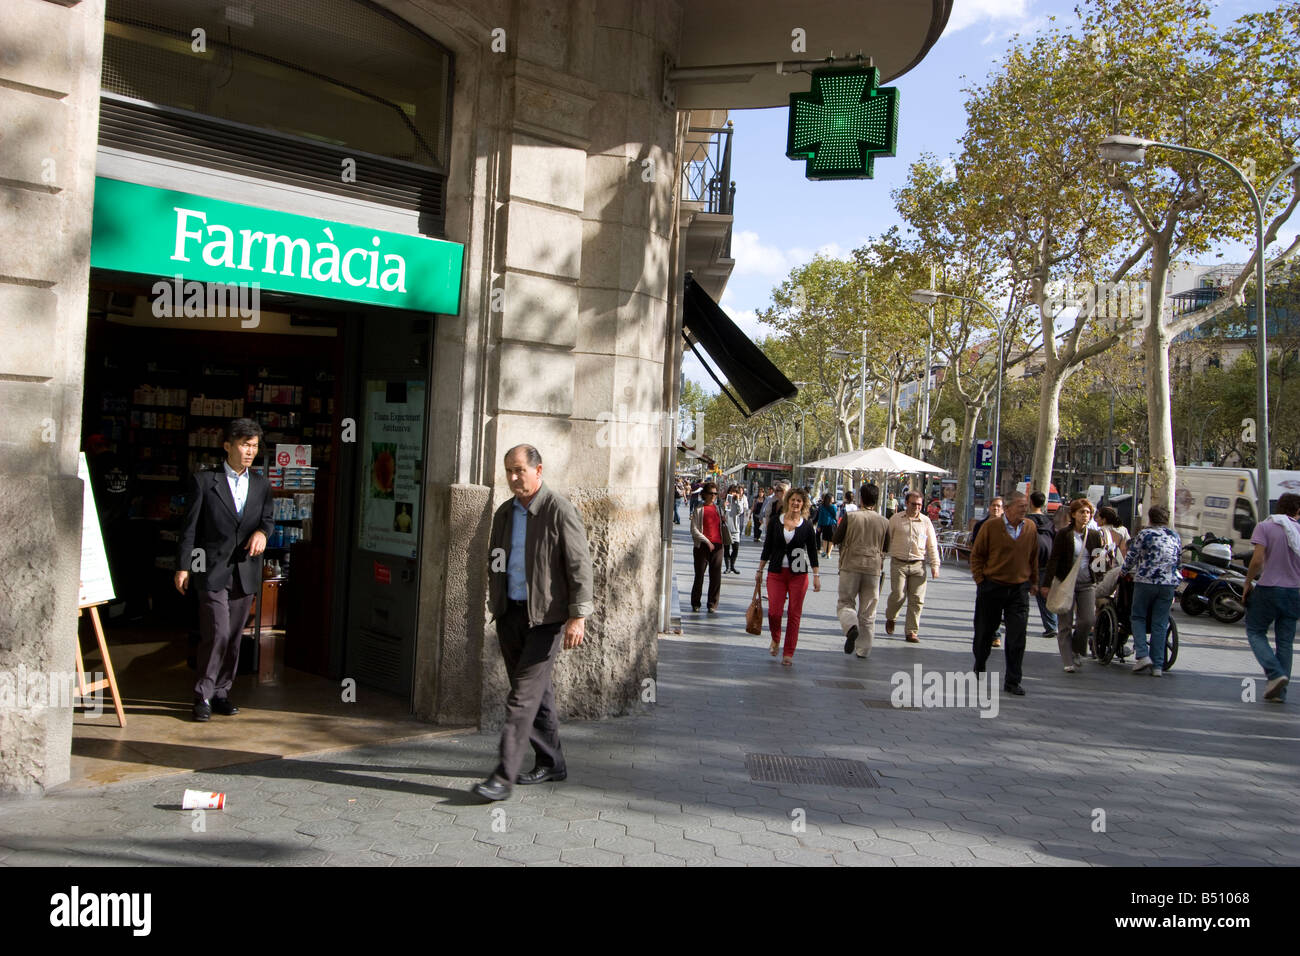 Farmacia pharmacy Barcelona Spain Stock Photo